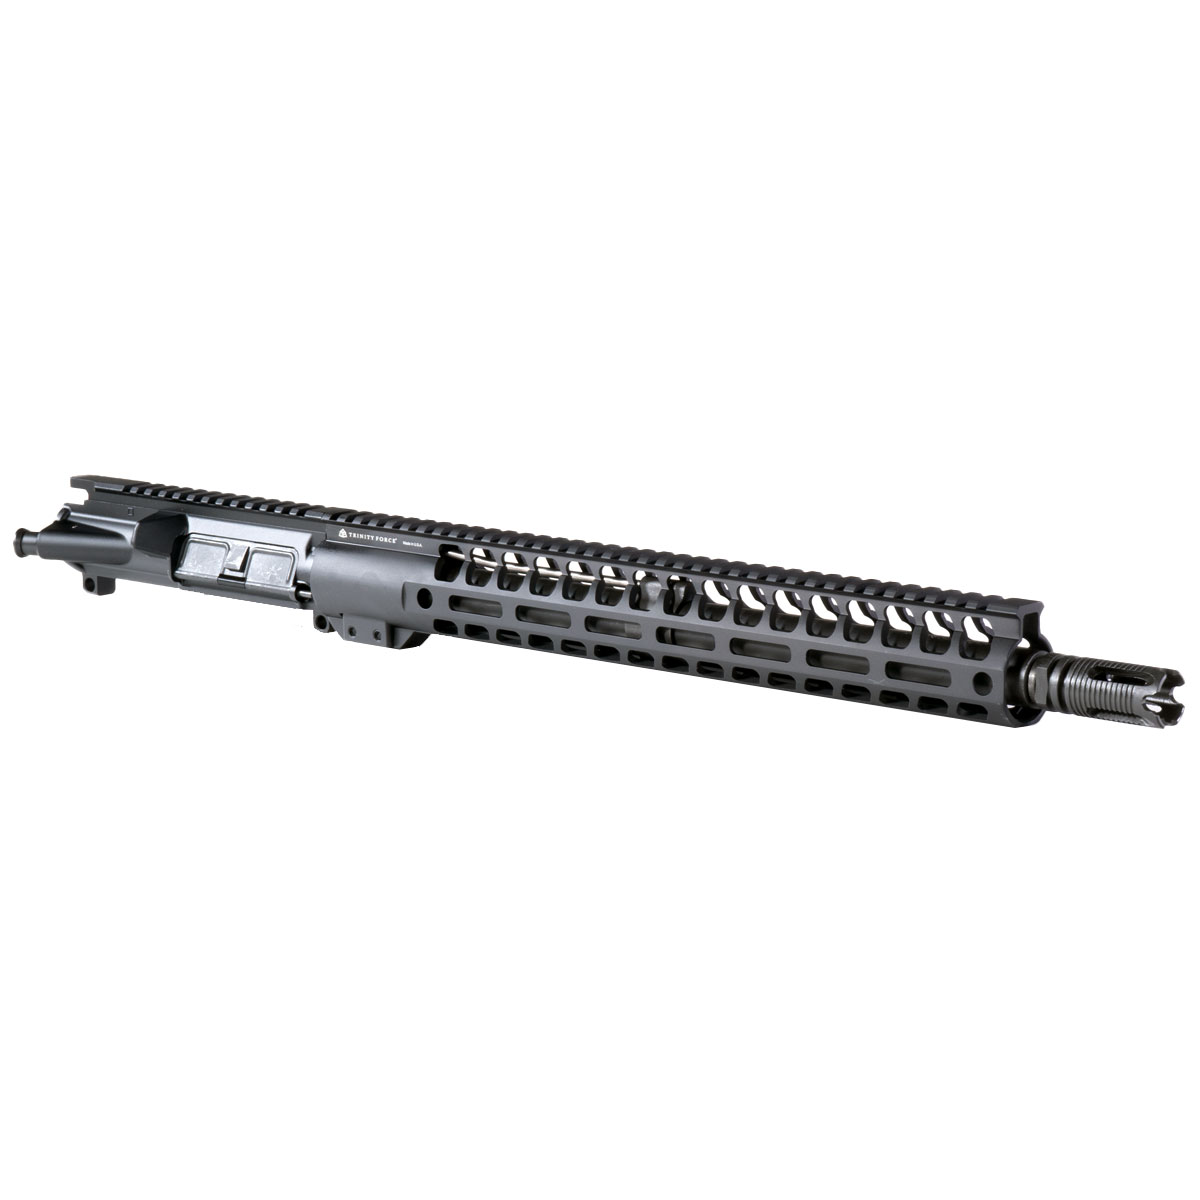 DTT 'Dream Breaker' 16-inch AR-15 .458 SOCOM Nitride Rifle Upper Build Kit